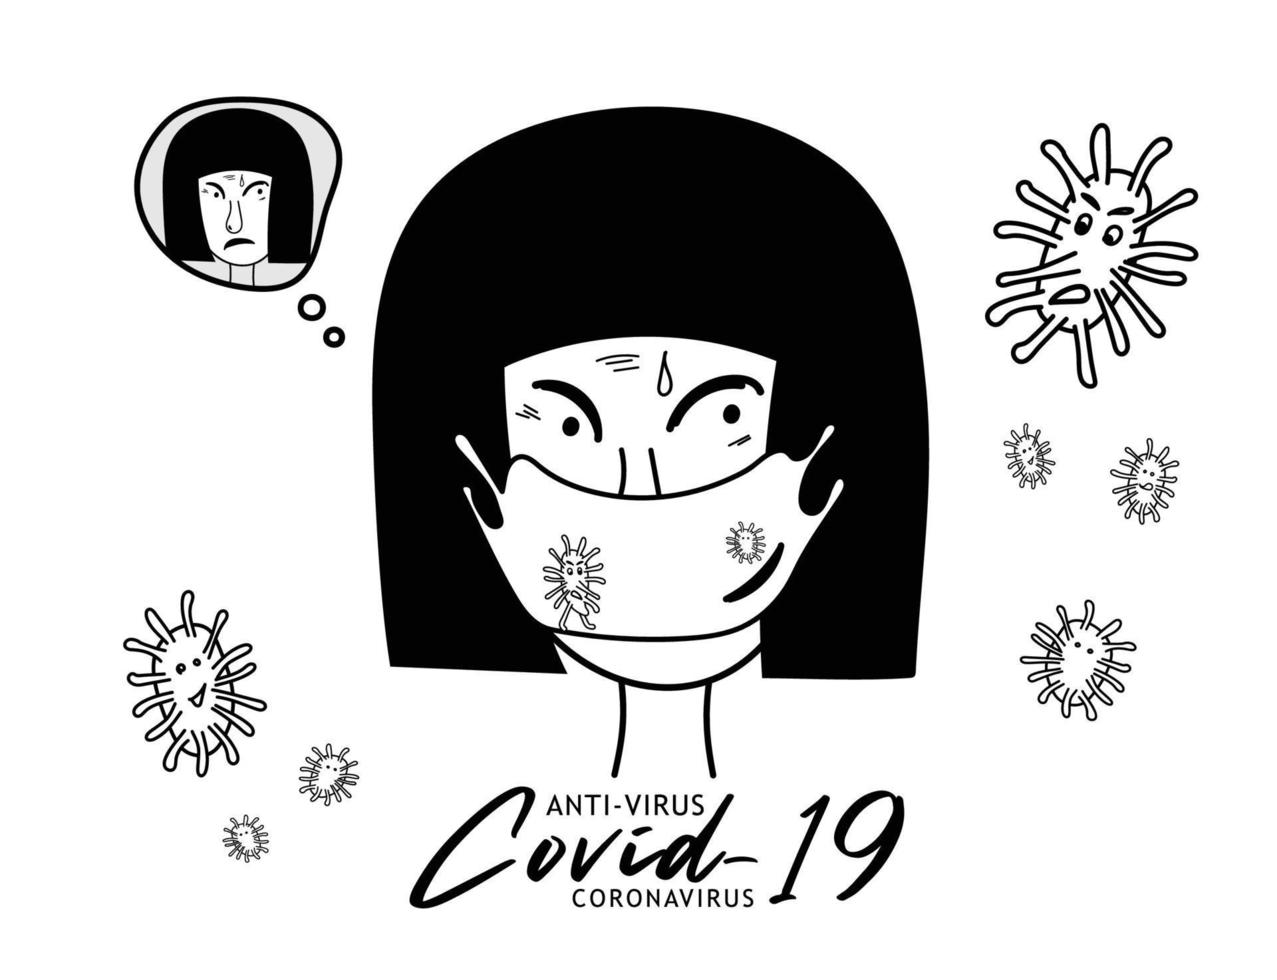 donne che indossano maschere antivirus covid-19, malattia coronavirus covid-19 vettore illustraton, segno, logo, cartone animato, simbolo, icona medica